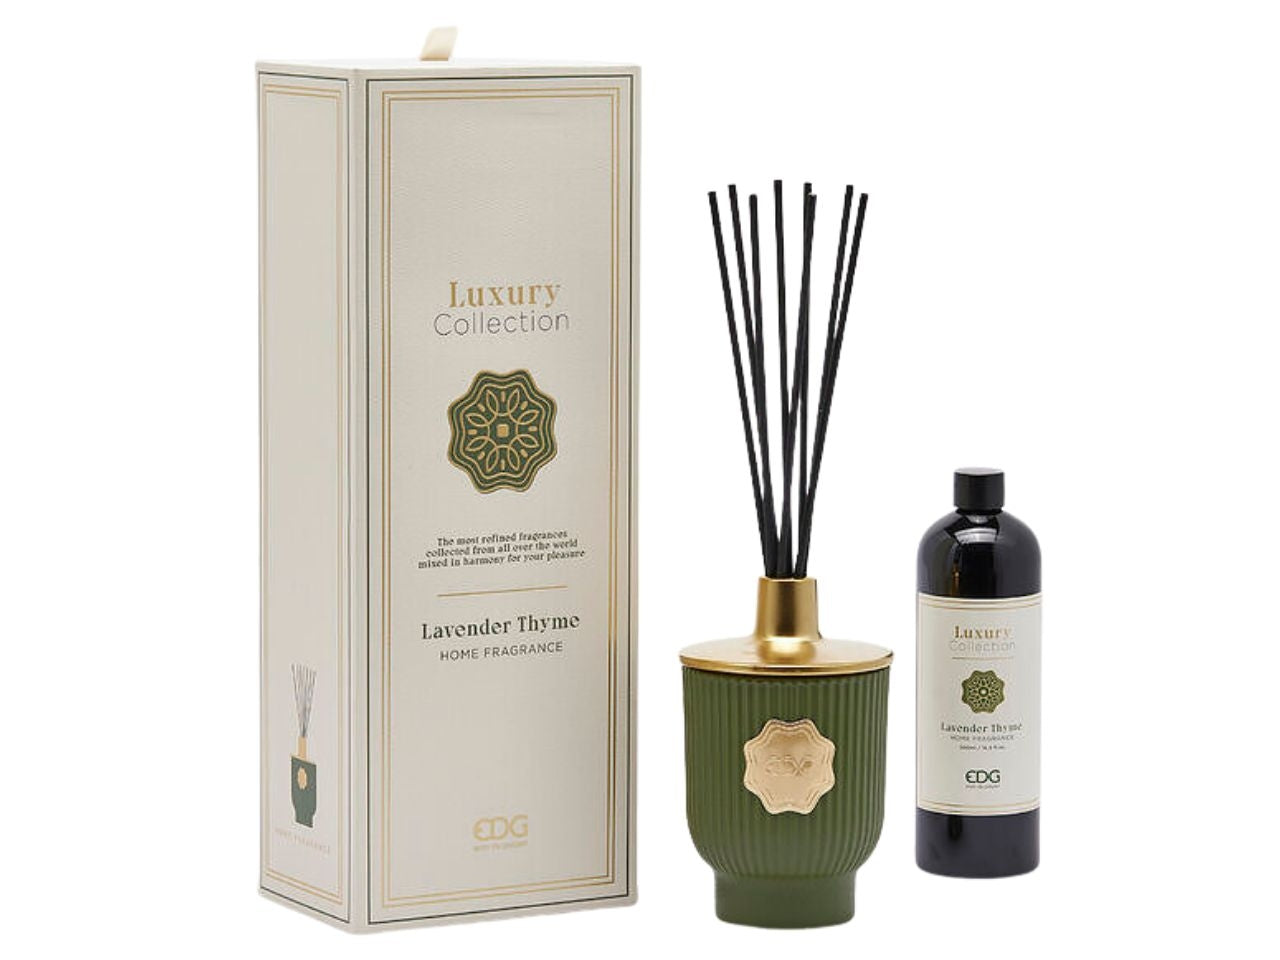 Diffusore di profumo Luxury, al profumo di Lavander Thyme in vetro color verde oliva, con scatola regalo 500ml - EDG